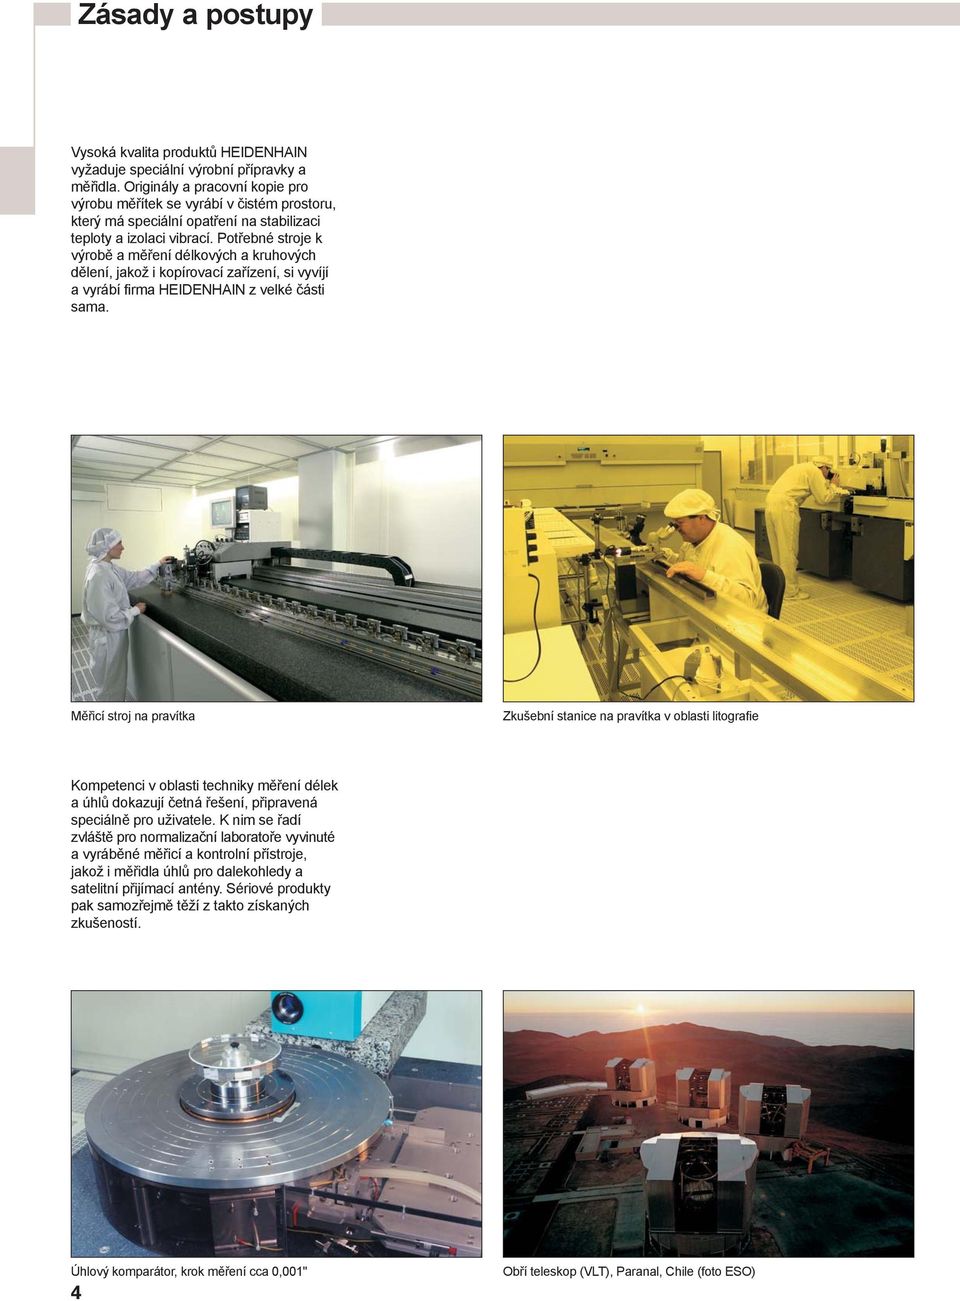 Potřebné stroje k výrobě a měření délkových a kruhových dělení, jakož i kopírovací zařízení, si vyvíjí a vyrábí firma HEIDENHAIN z velké části sama.